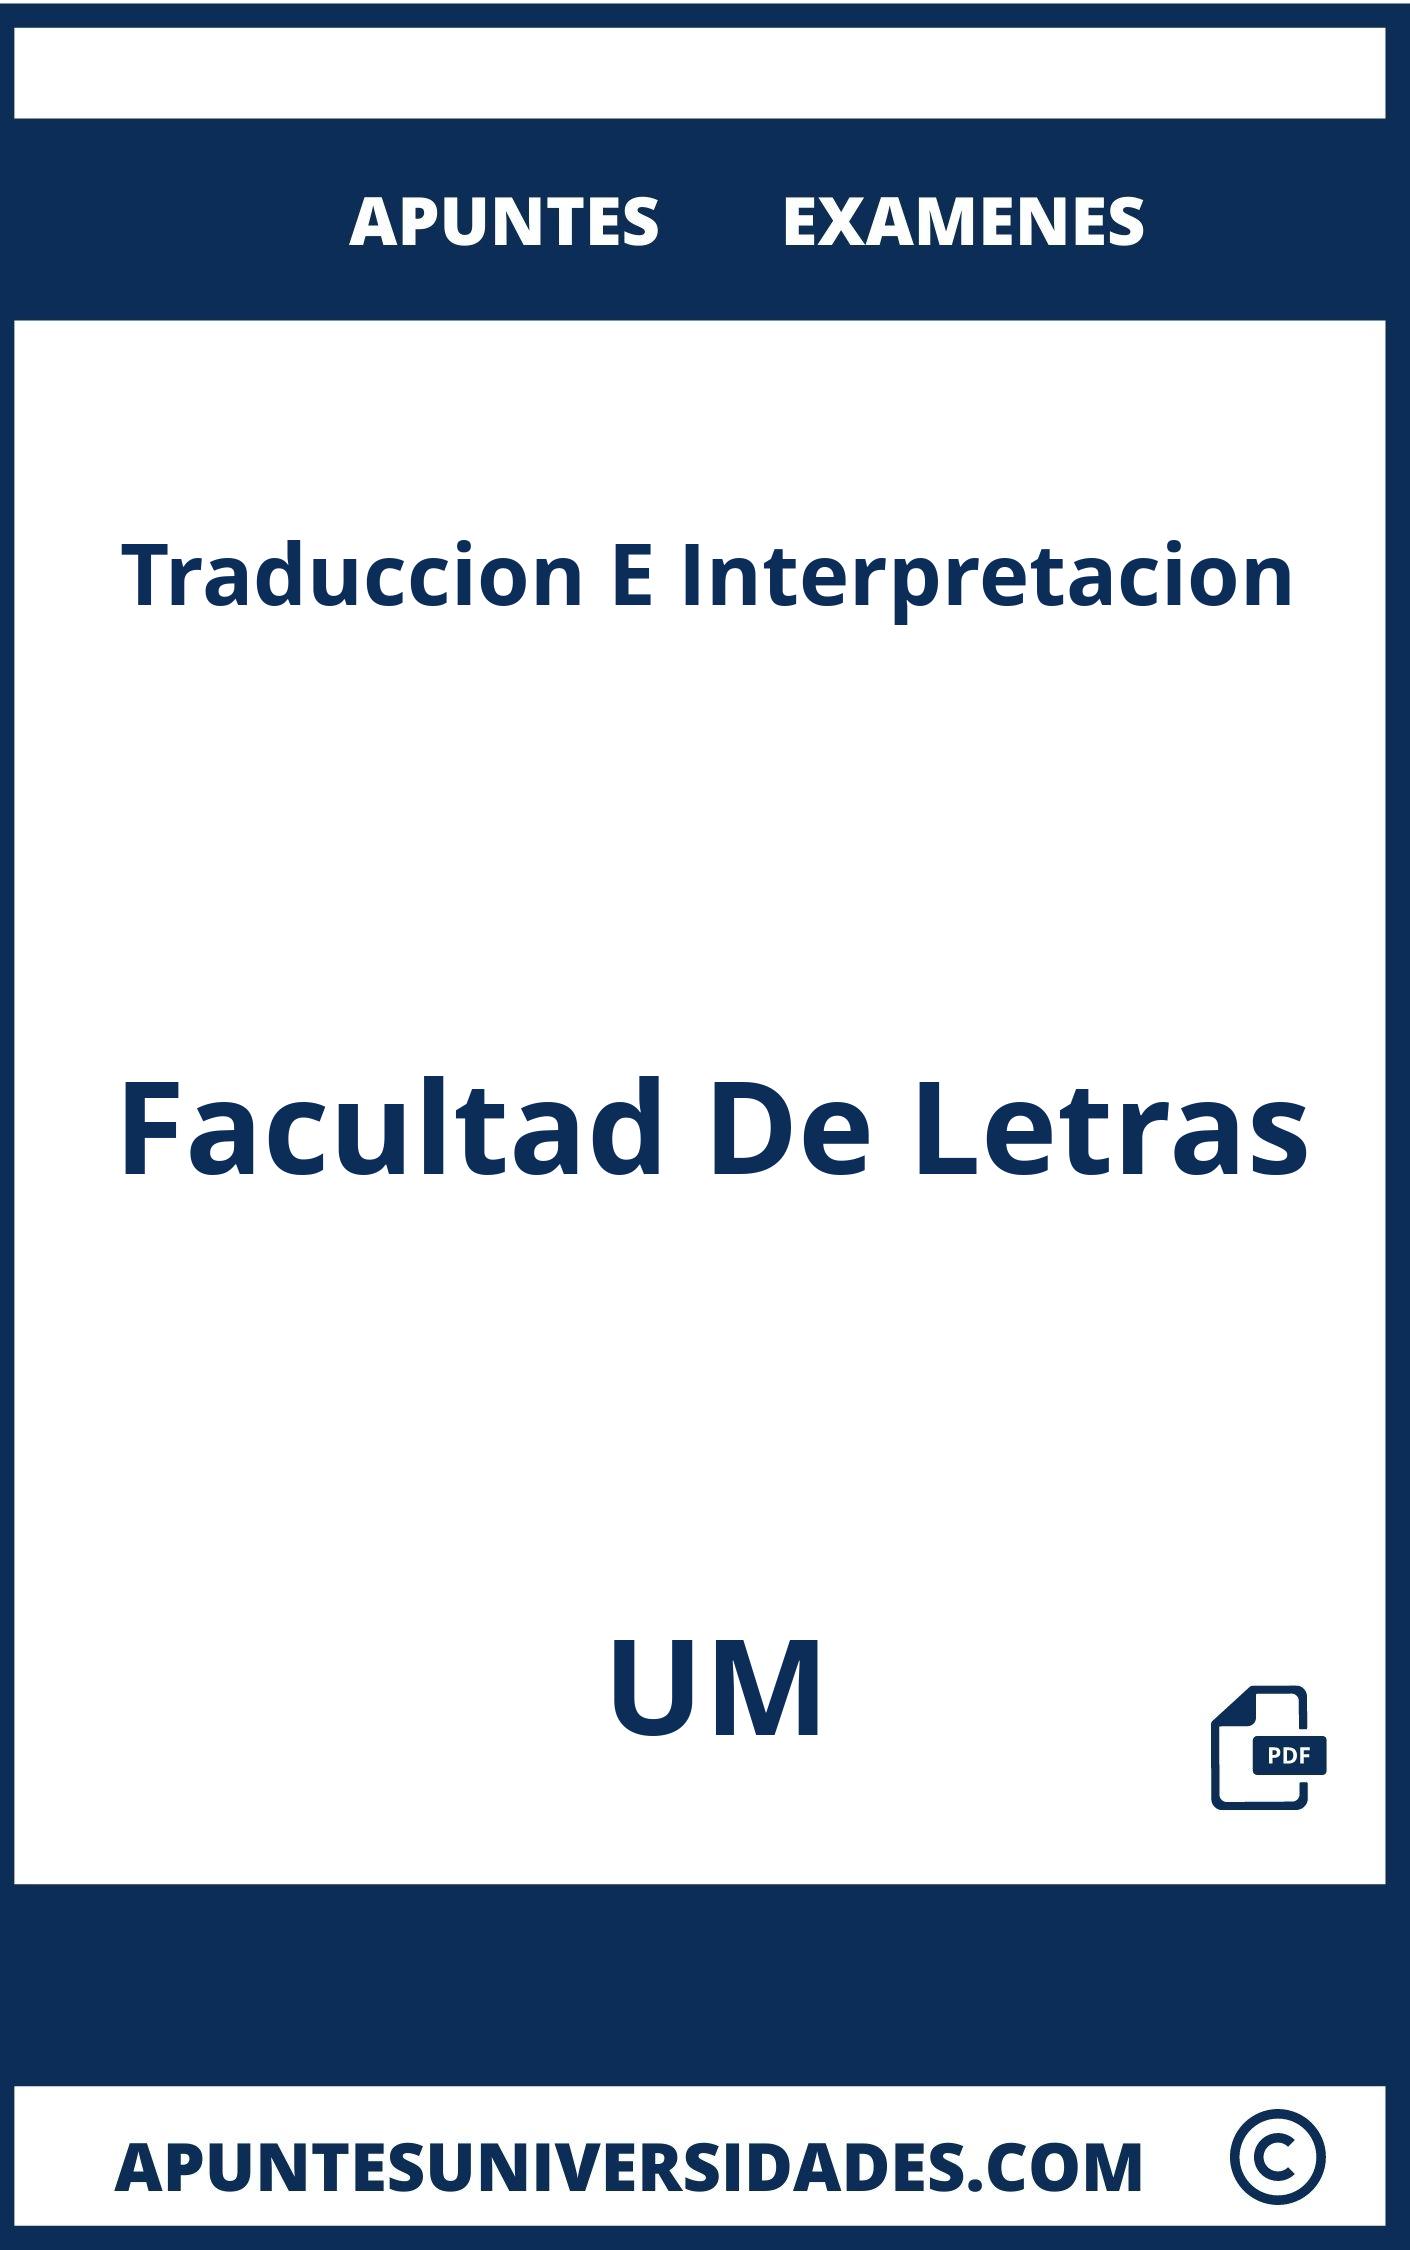 Apuntes Traduccion E Interpretacion UM y Examenes